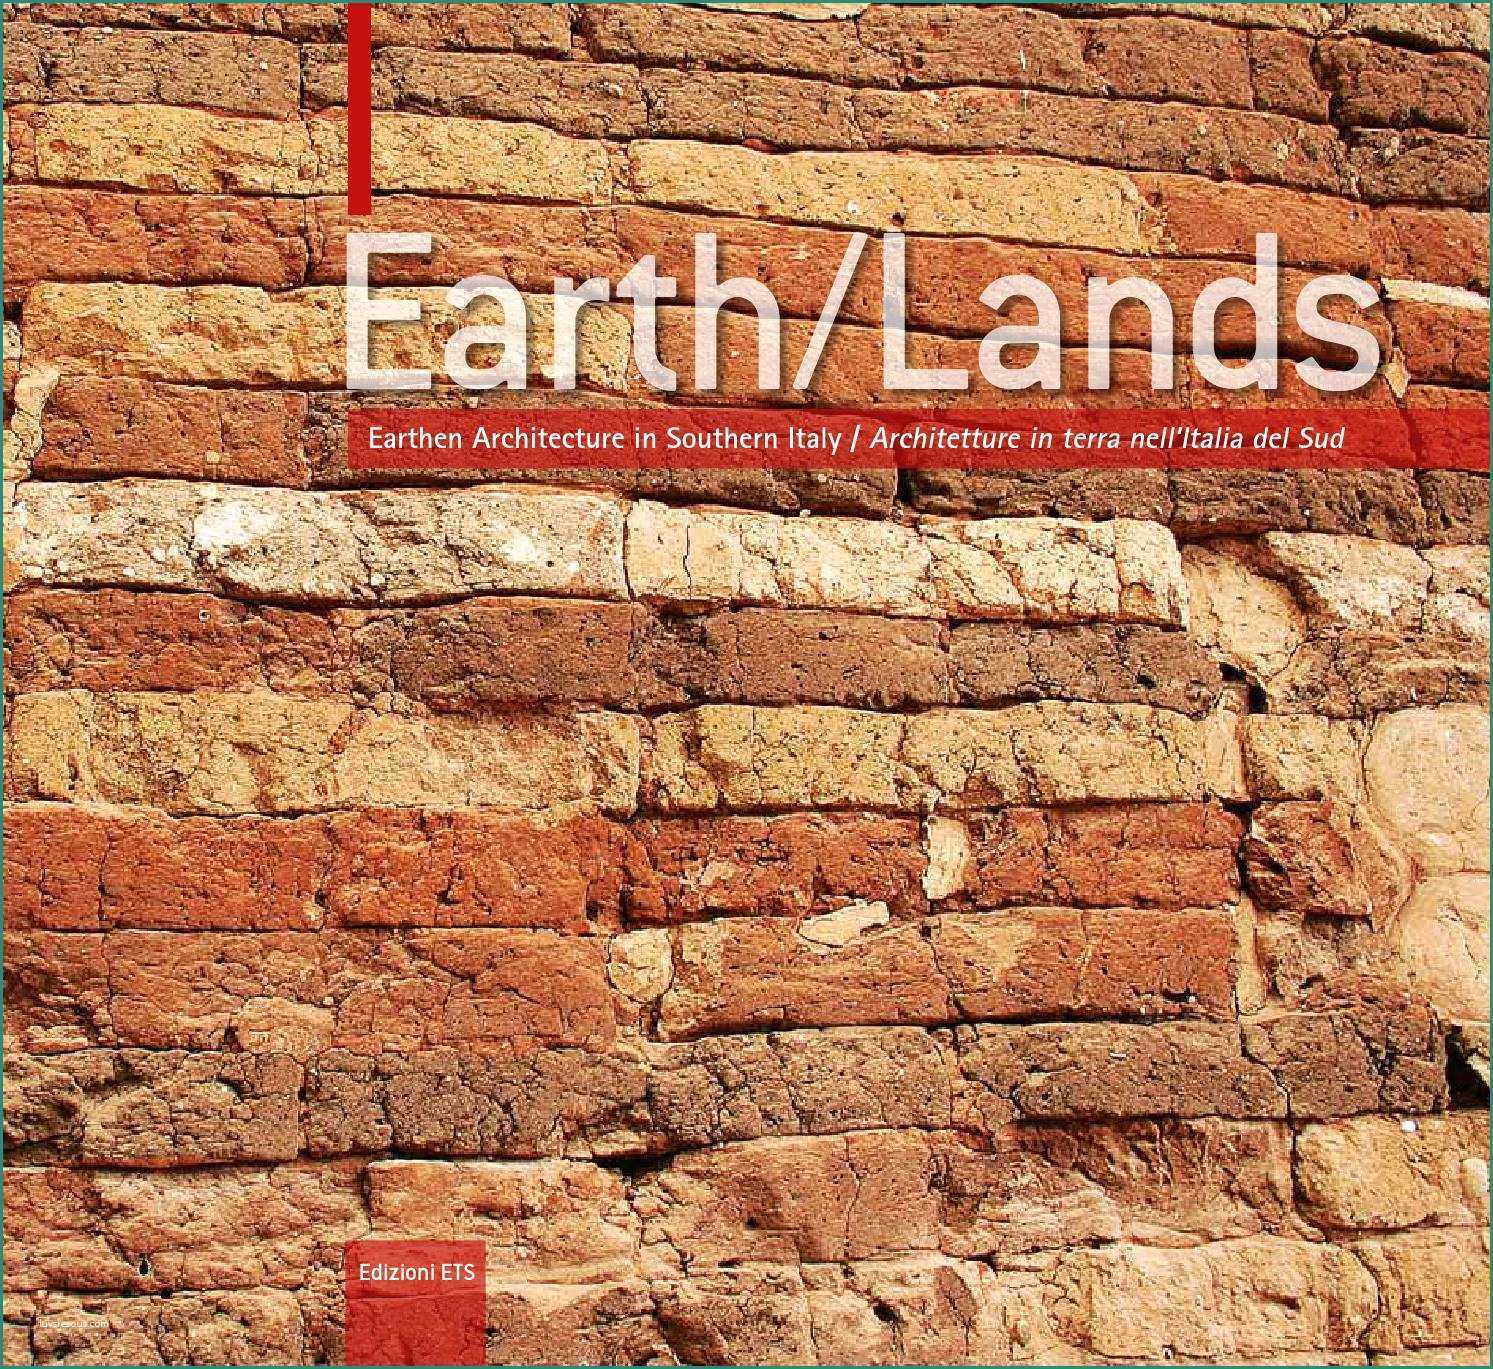 Blocchi Prefabbricati Per Muri Di Contenimento E Earth Lands Earthen Architecture Of southern Italy by Dida issuu